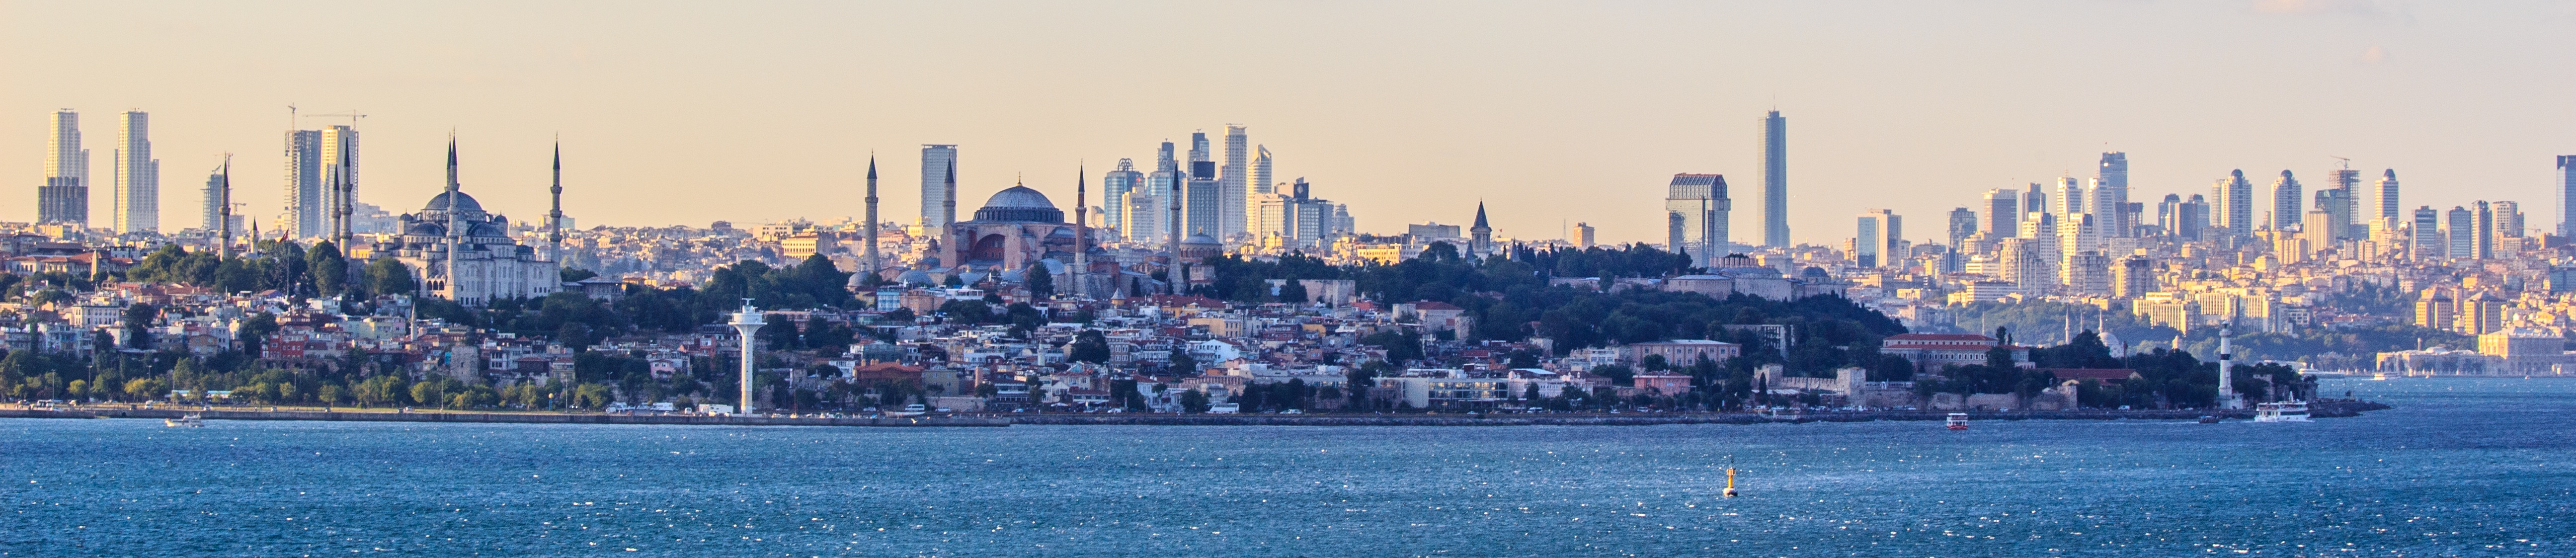 Panoramatický pohled na Istanbul. Podél břehu lze vidět mešitu sultána Ahmeda , chrám Hagia Sophia , palác Topkap? a palác Dolmabahçe. Foto: Ben Morlok, Wikipedia, CC BY-SA 2.0